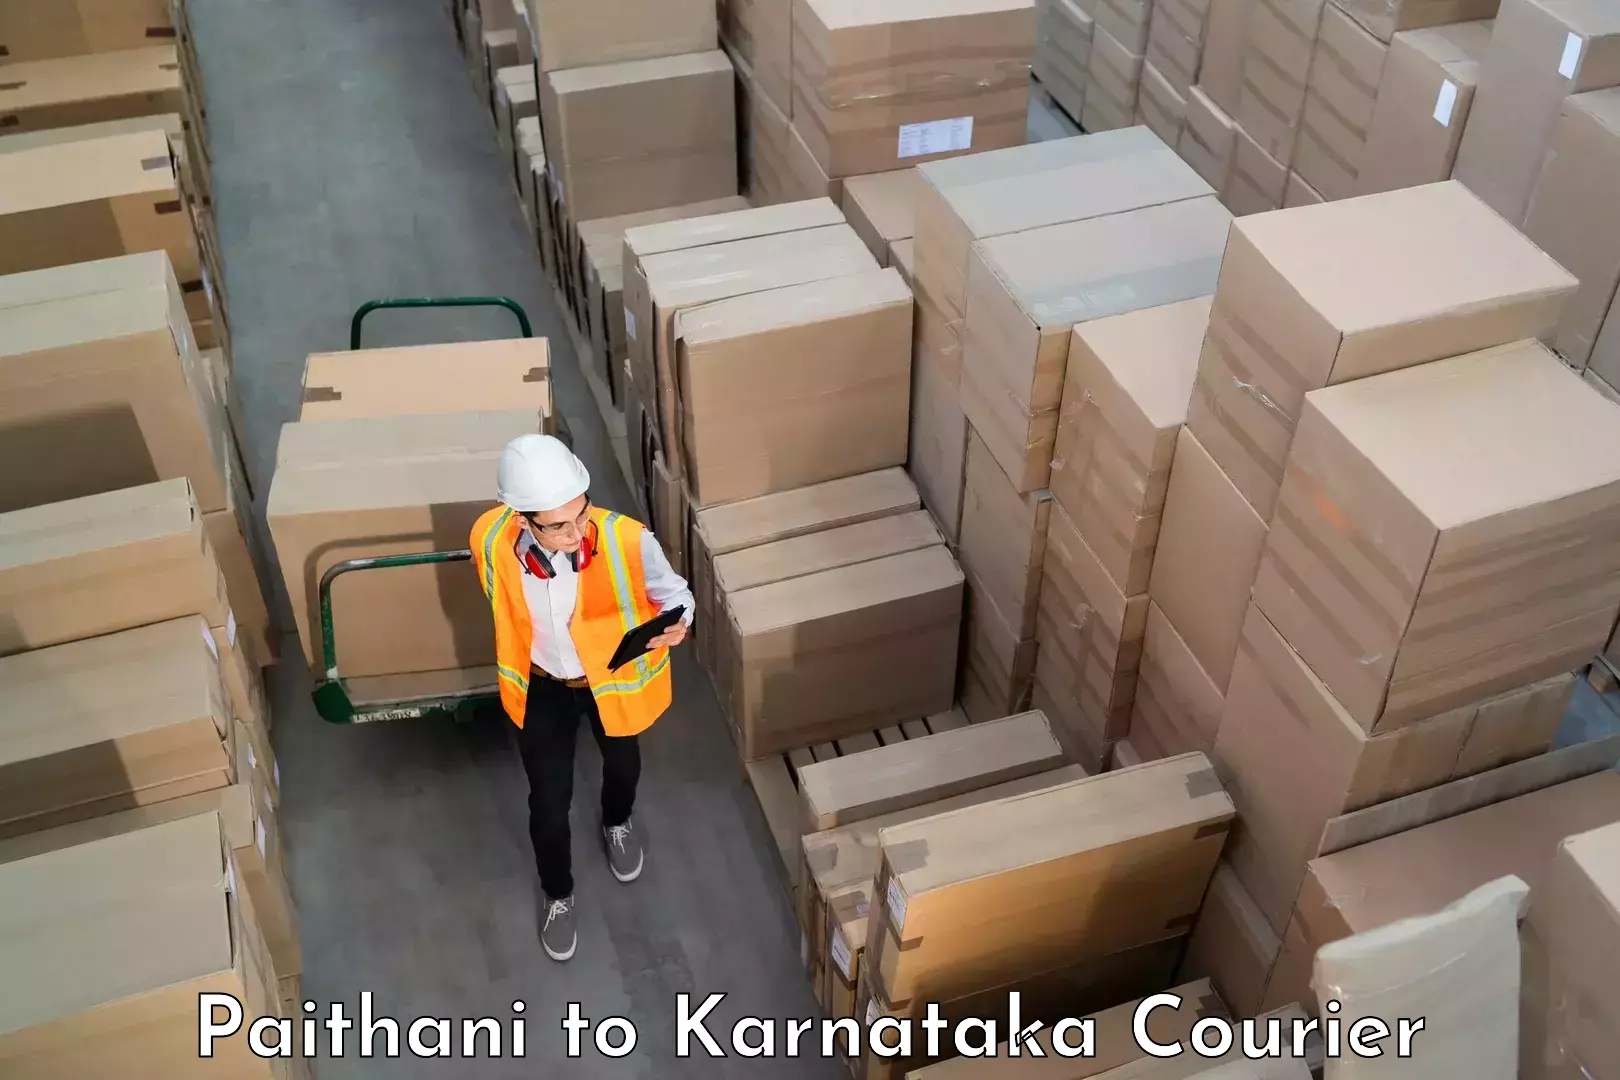 Luggage shipment tracking Paithani to Kanjarakatte